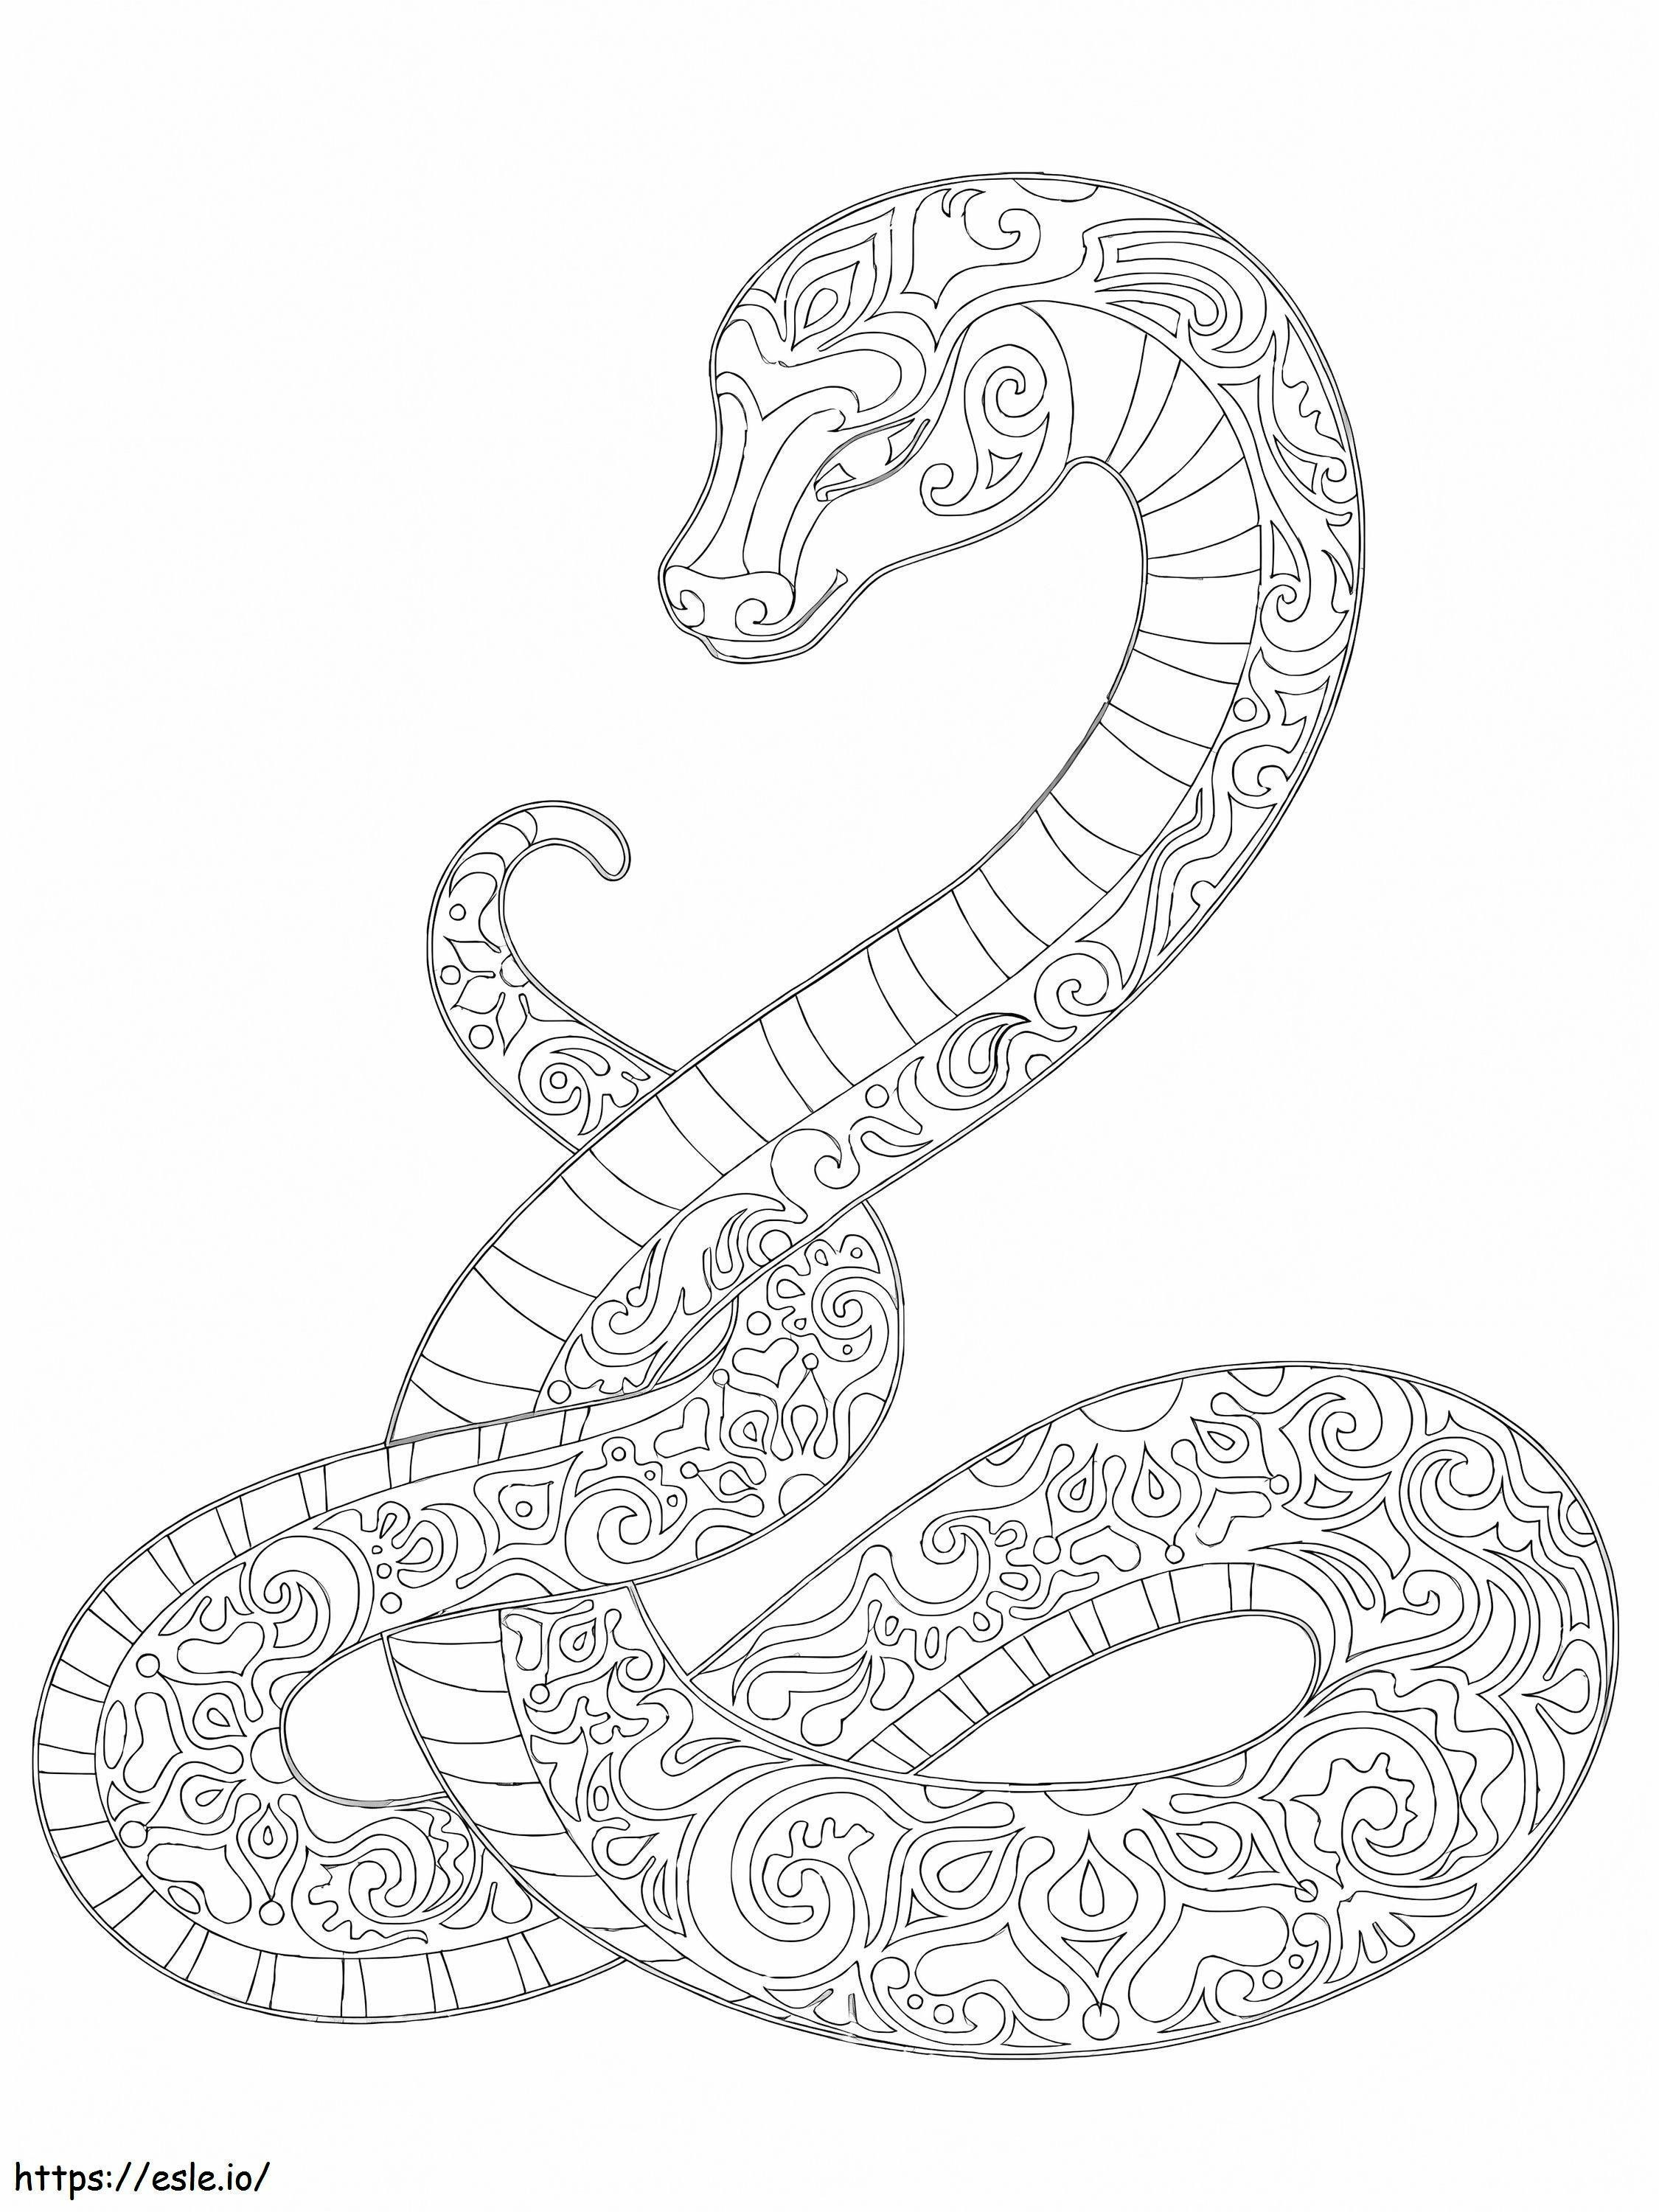 Mandala käärme värityskuva